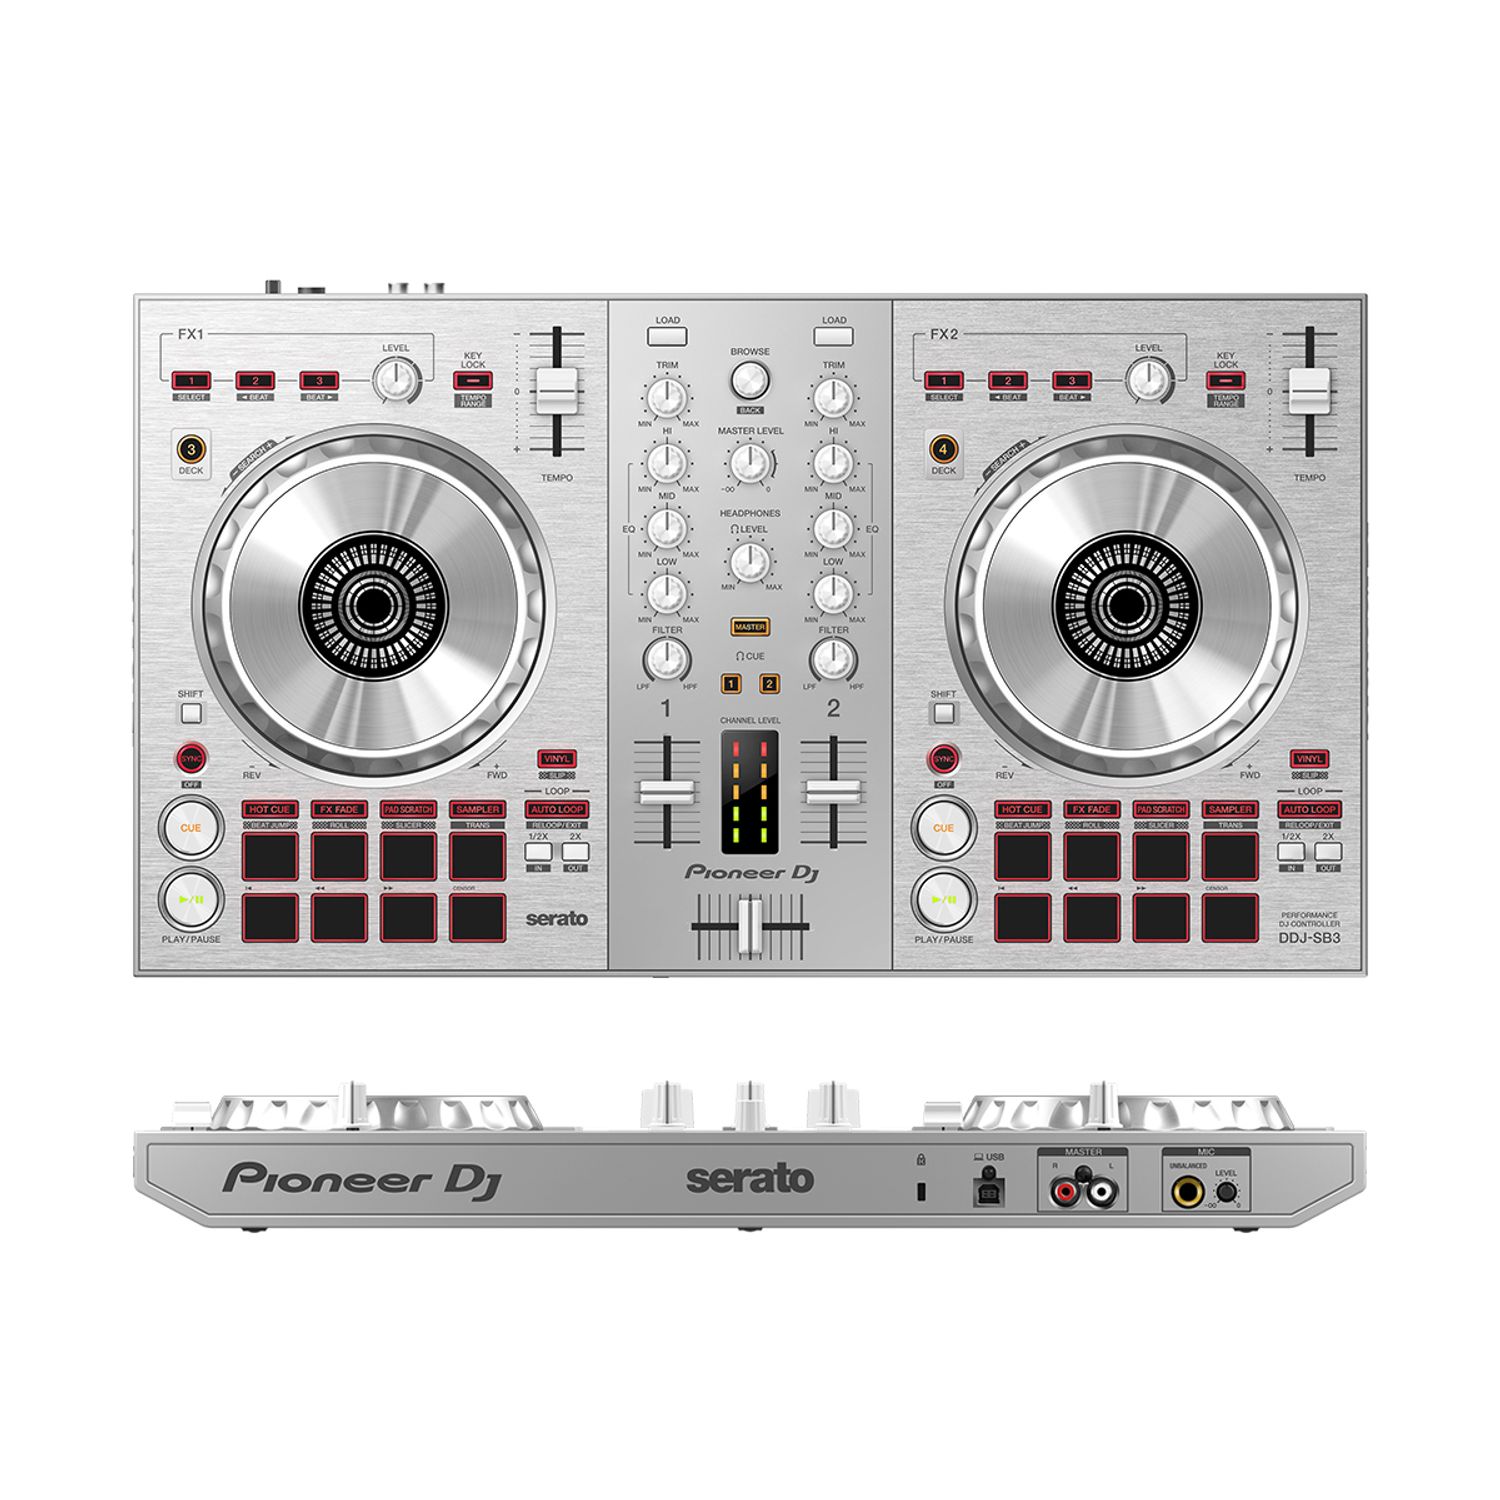 DDJ-SX3 actualizado: Pioneer DJ lanza firmware 1.02 para controlador DJ